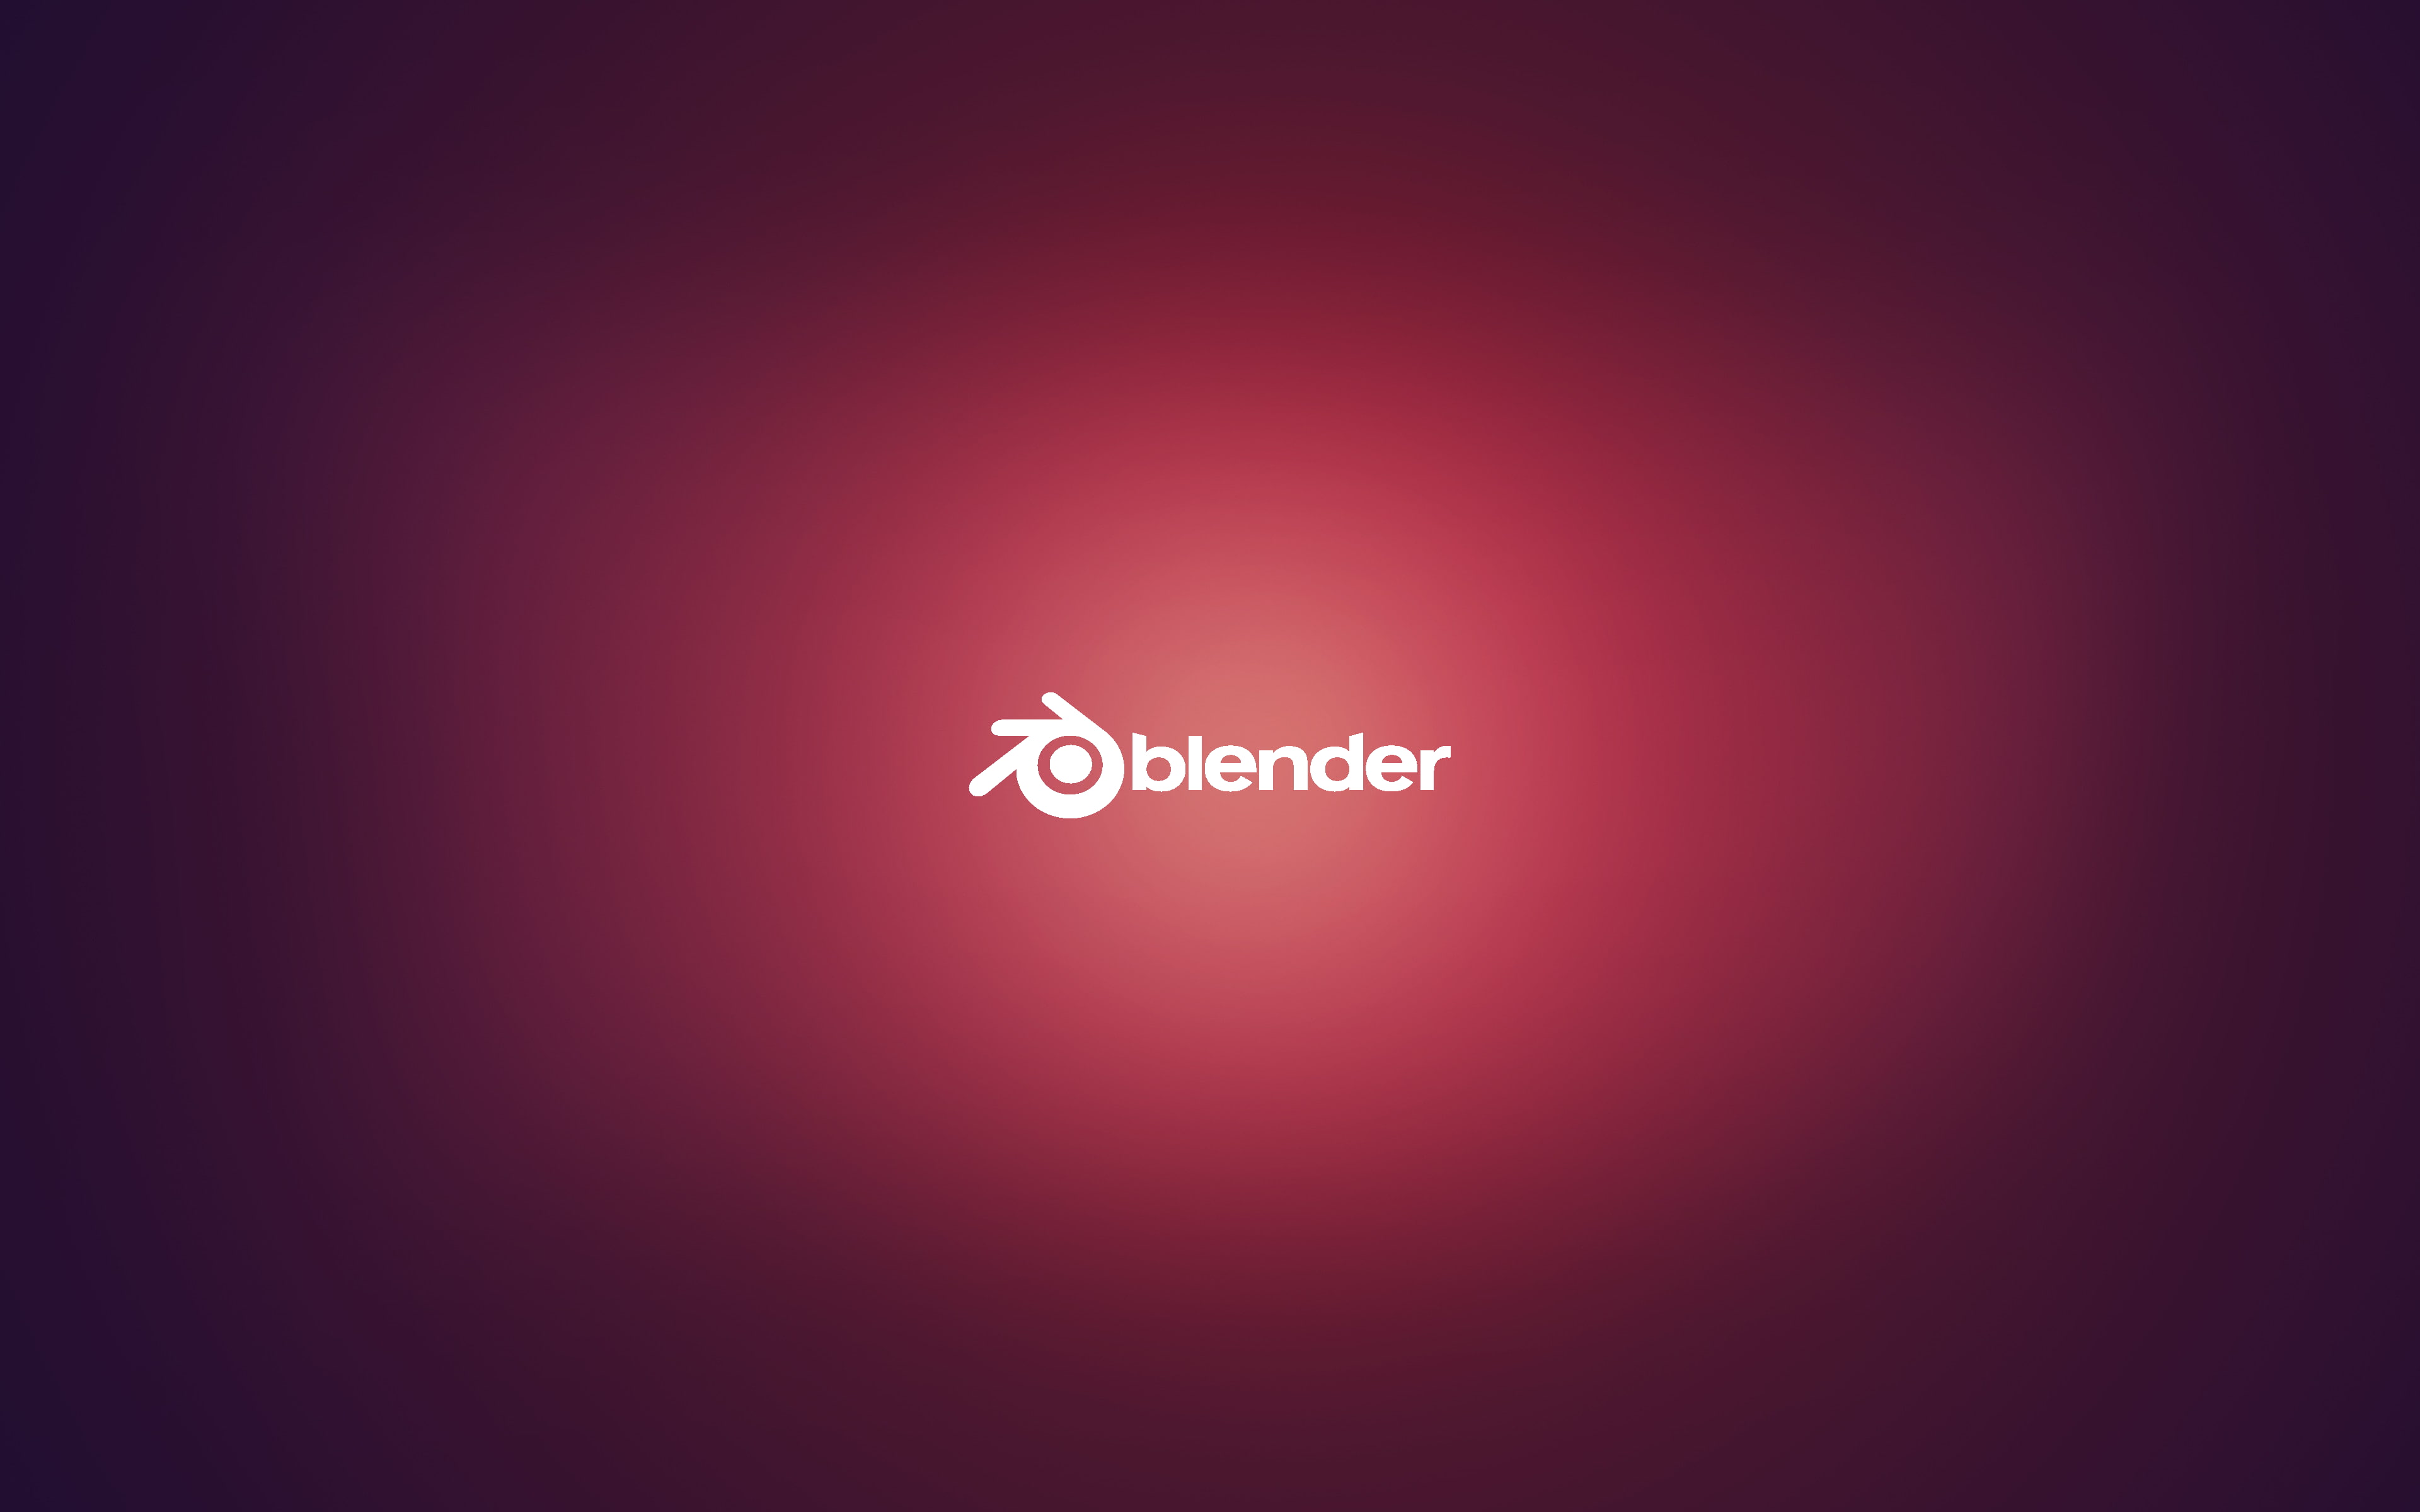 Blender Wallpaper - Blender - Blender , HD Wallpaper & Backgrounds